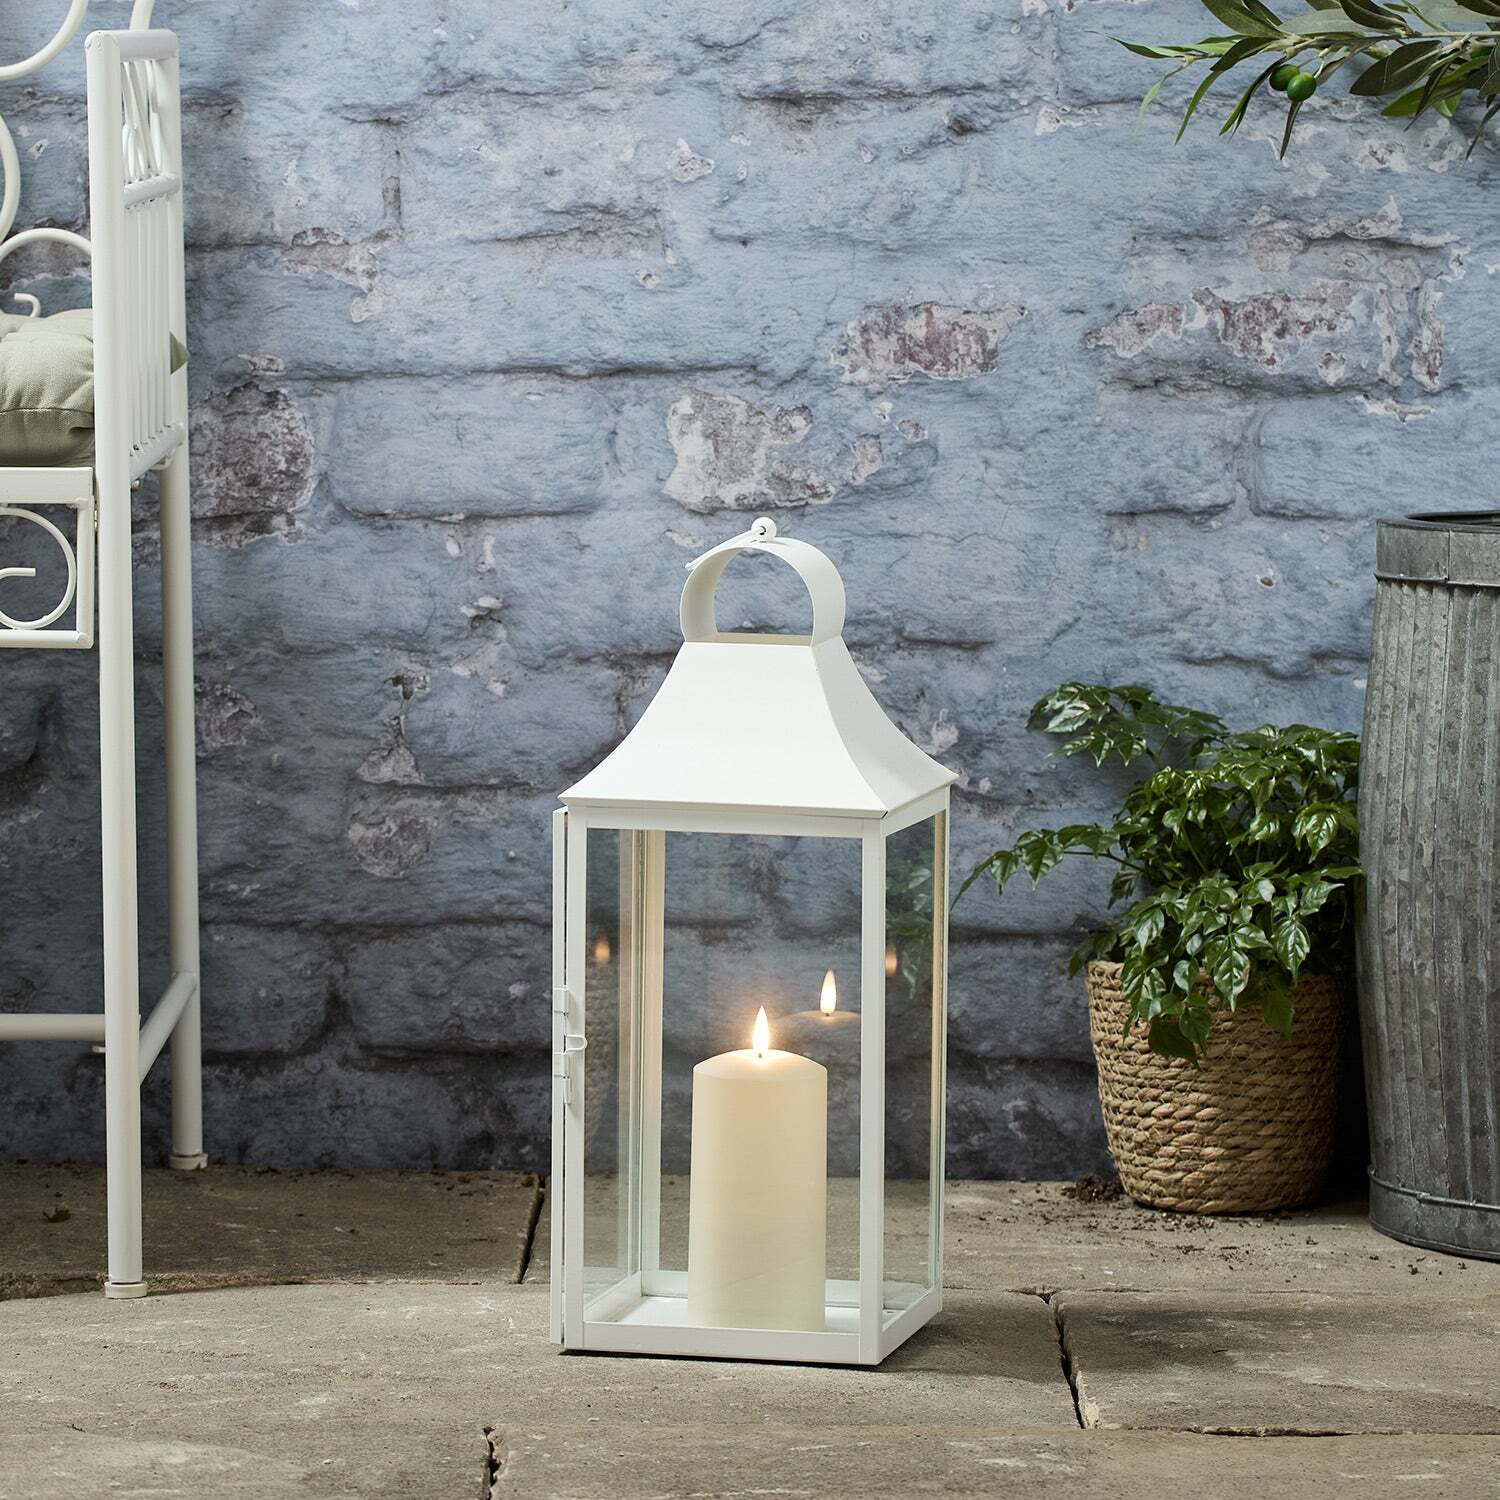 45cm Albury White Garden Lantern with TruGlow® Candle - image 1